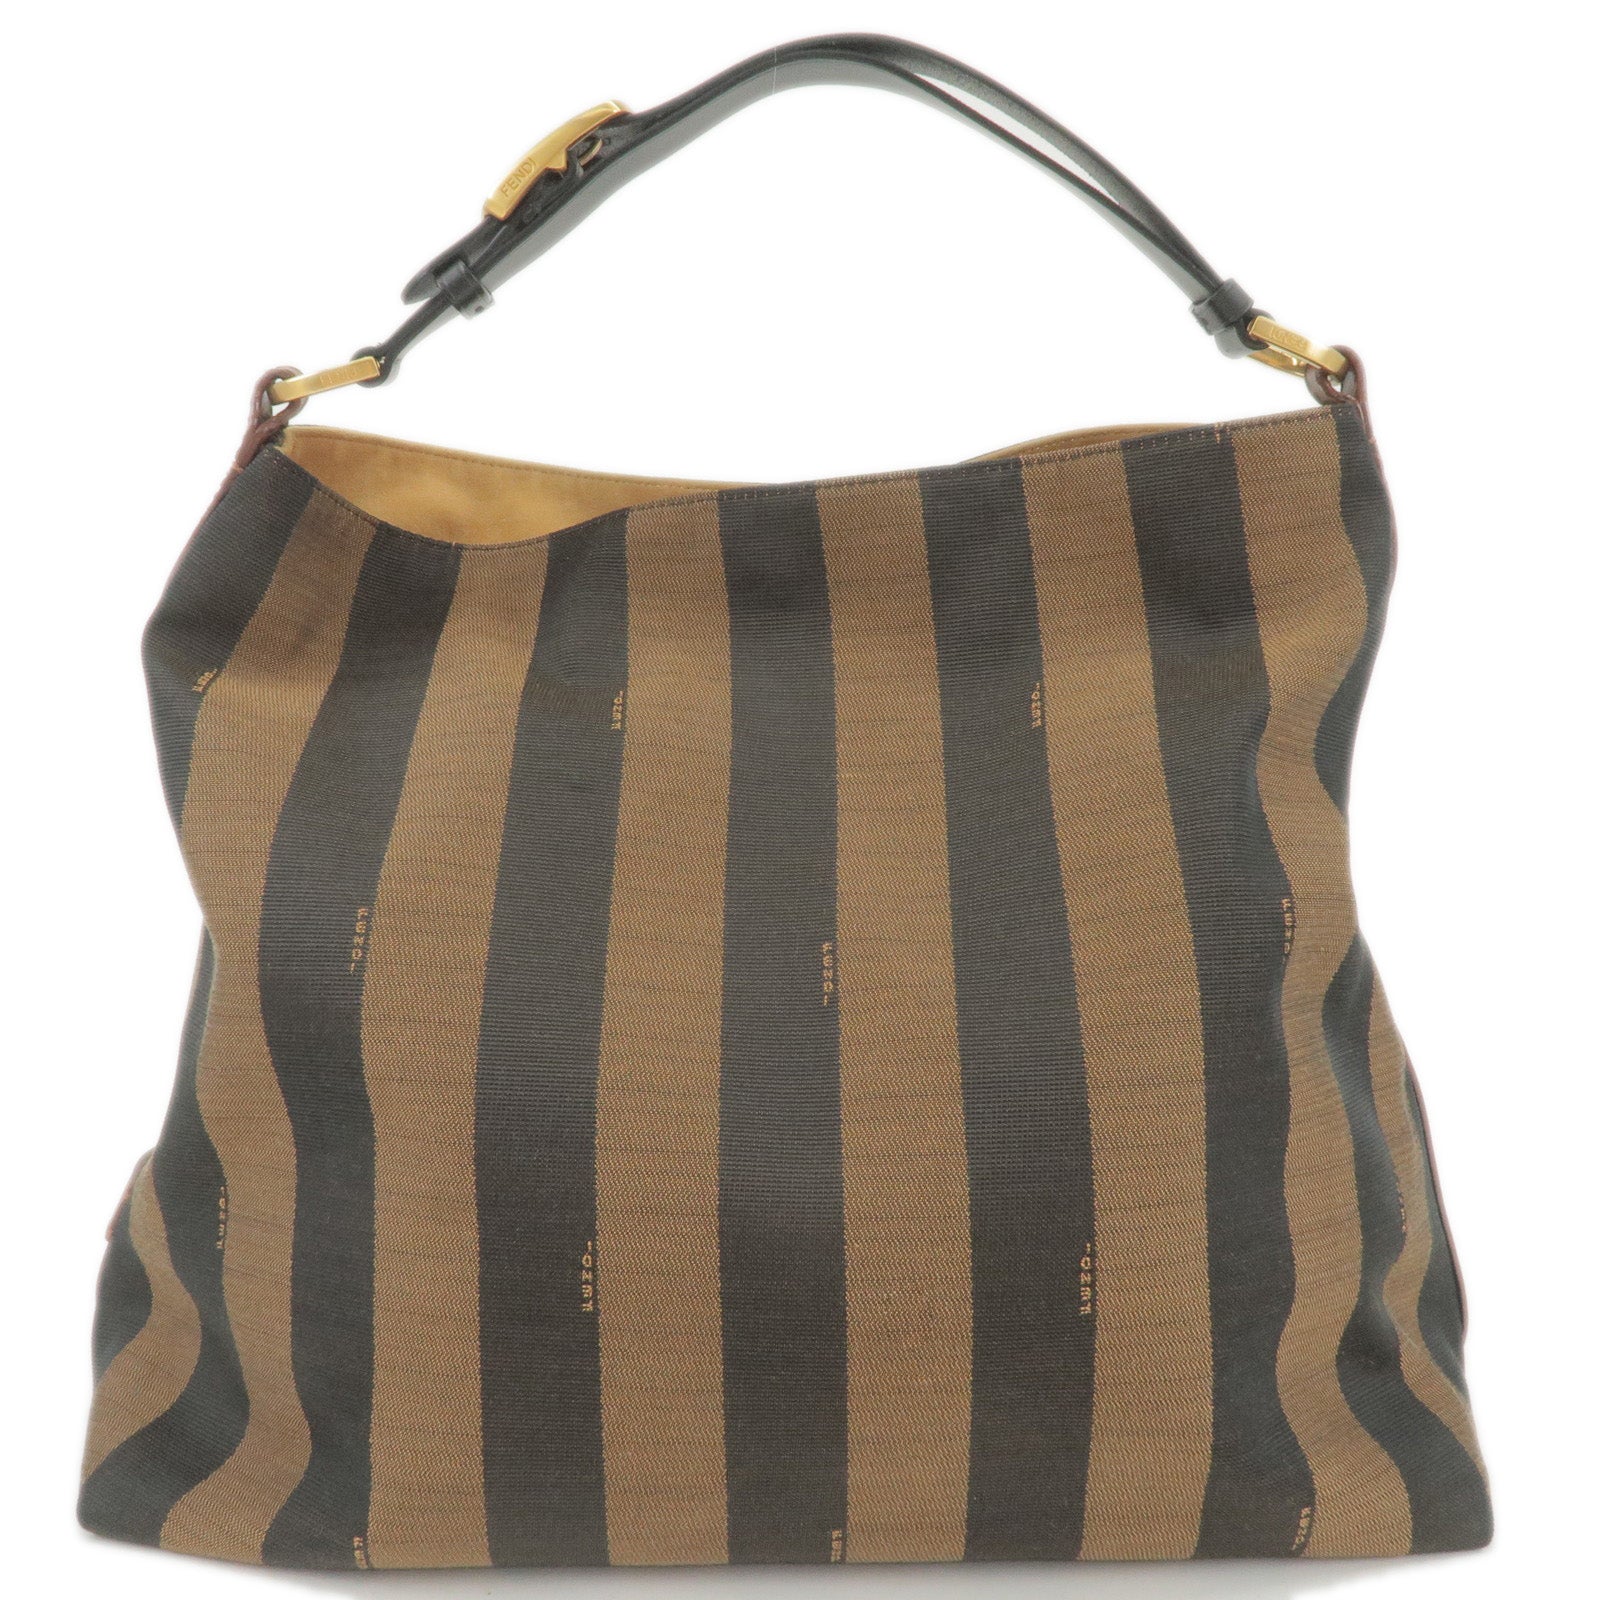 FENDI-Pequin-Canvas-Leather-Shoulder-Bag-Beige-Black-Brown-8BR653